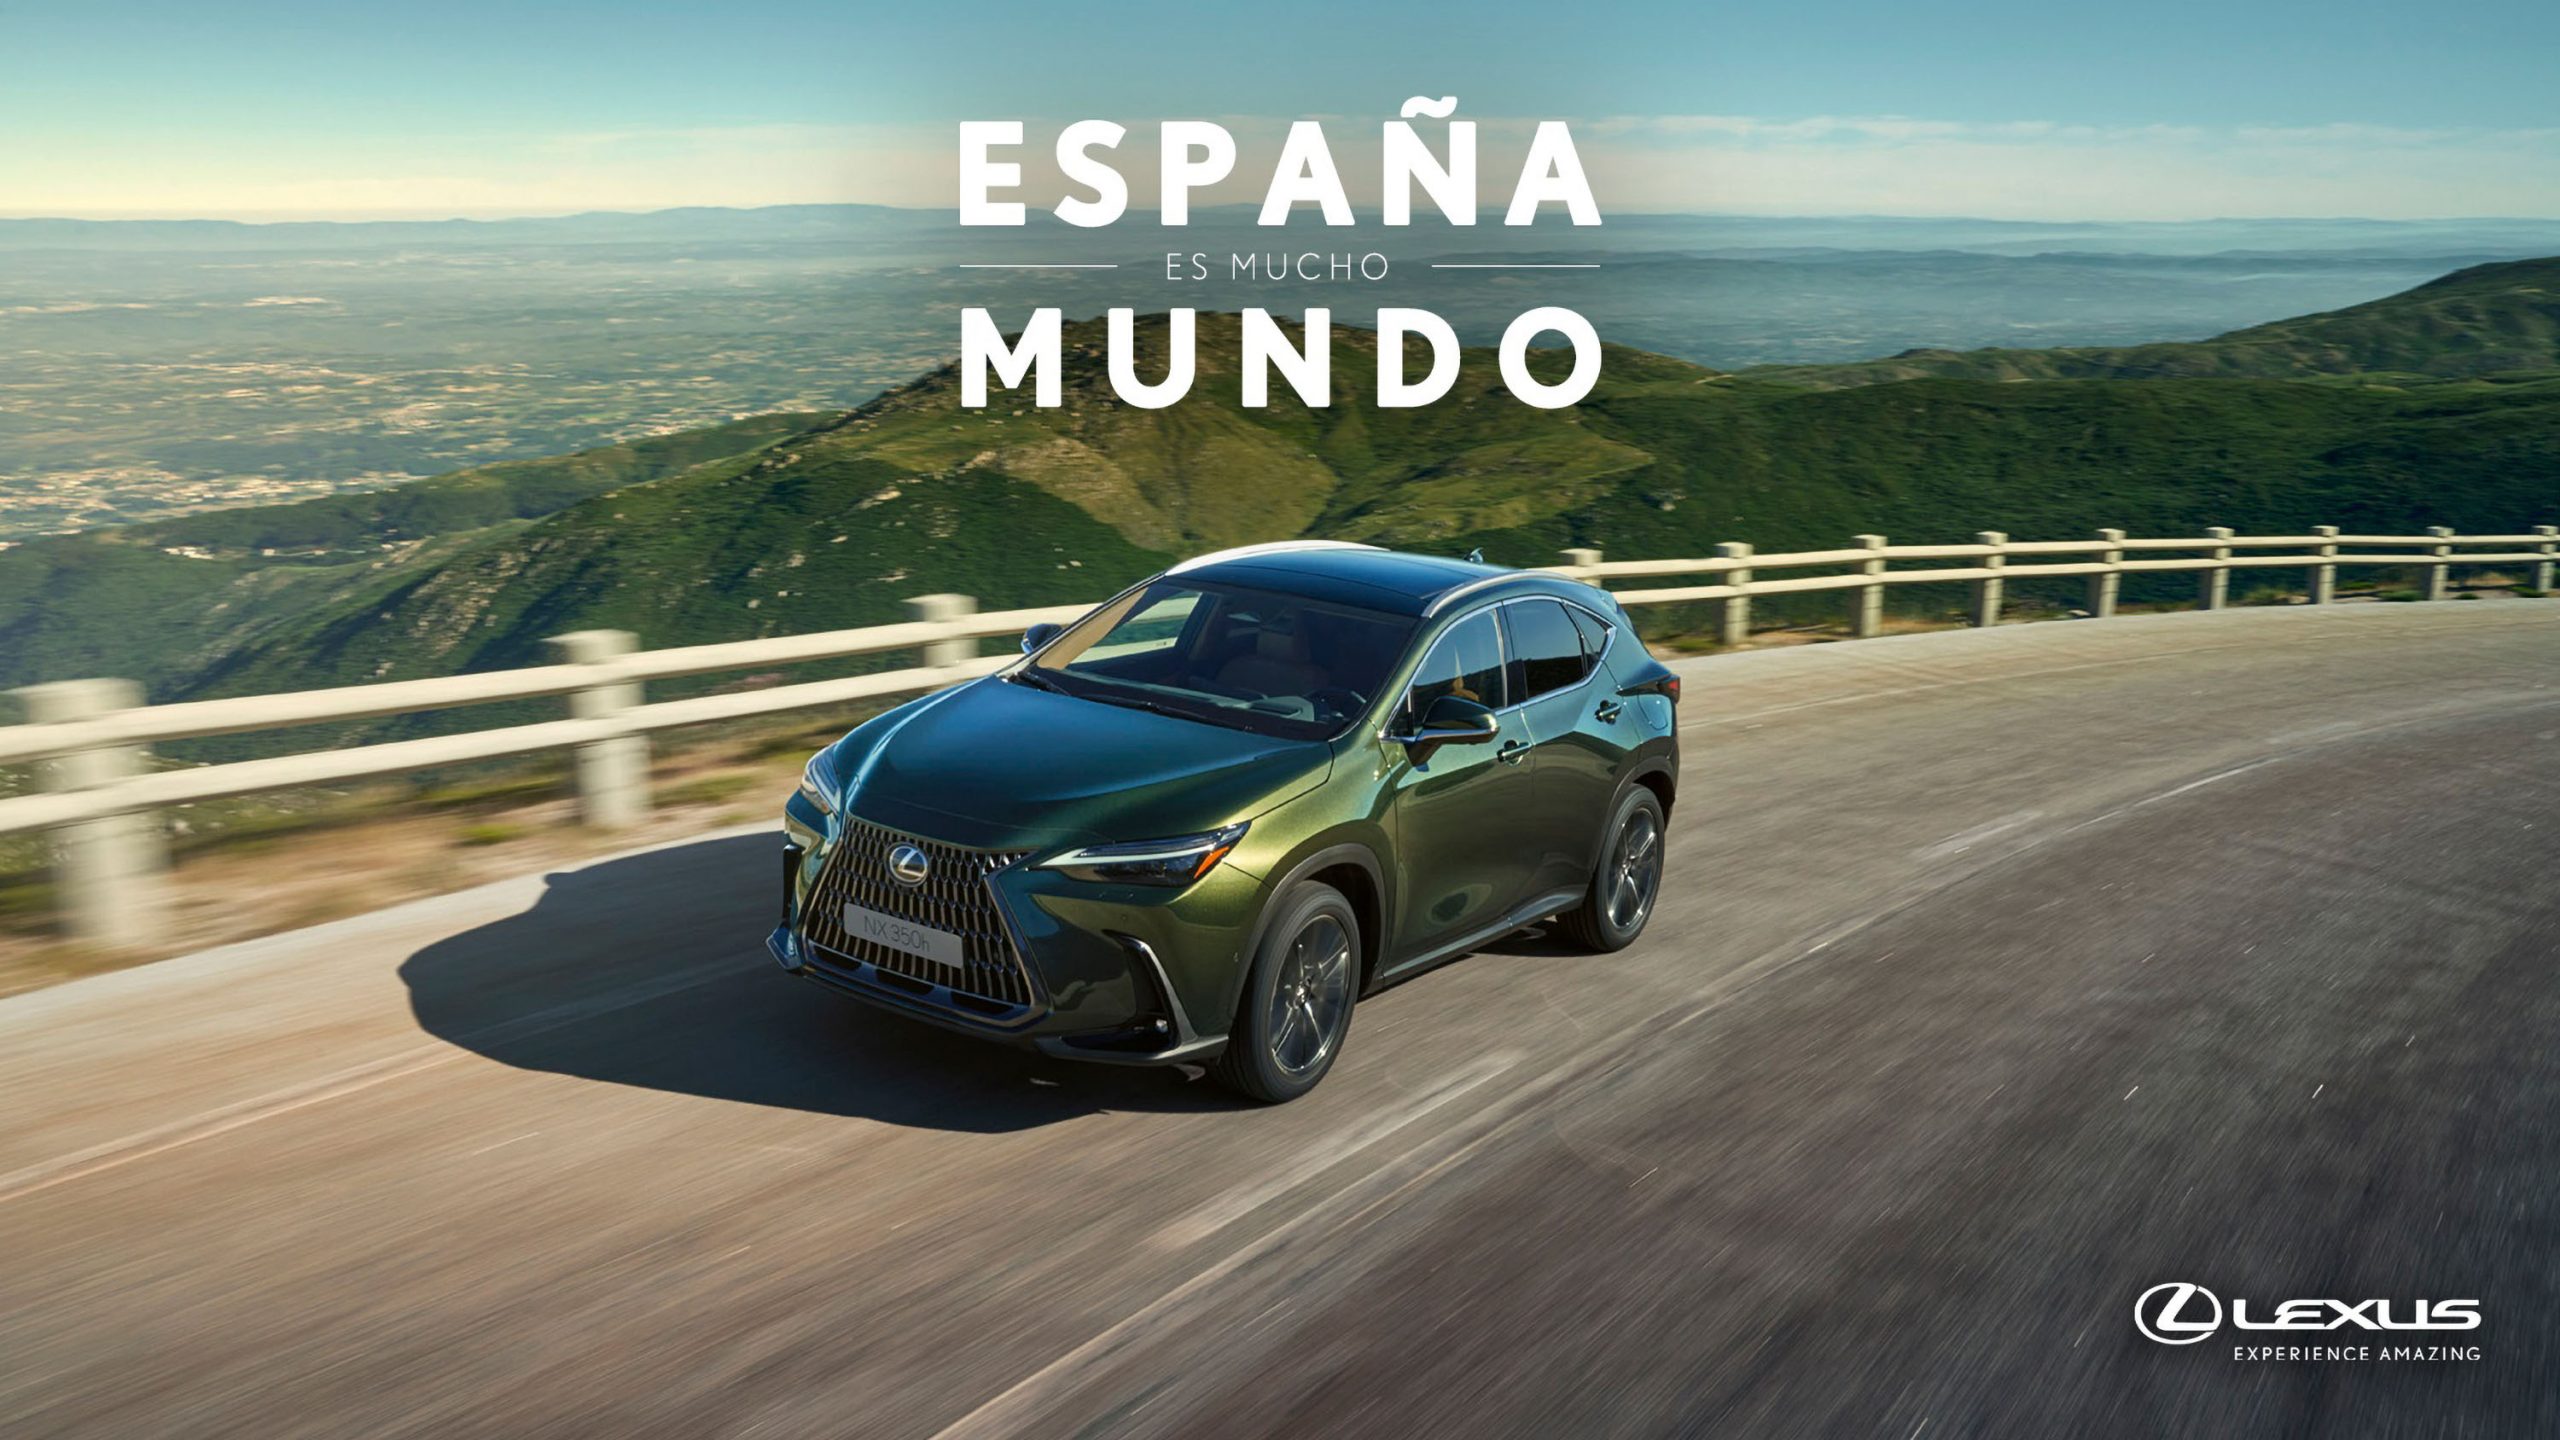 Galería: Lexus Presenta la Tercera Edición de ‘España es Mucho Mundo: Escapadas de Invierno’